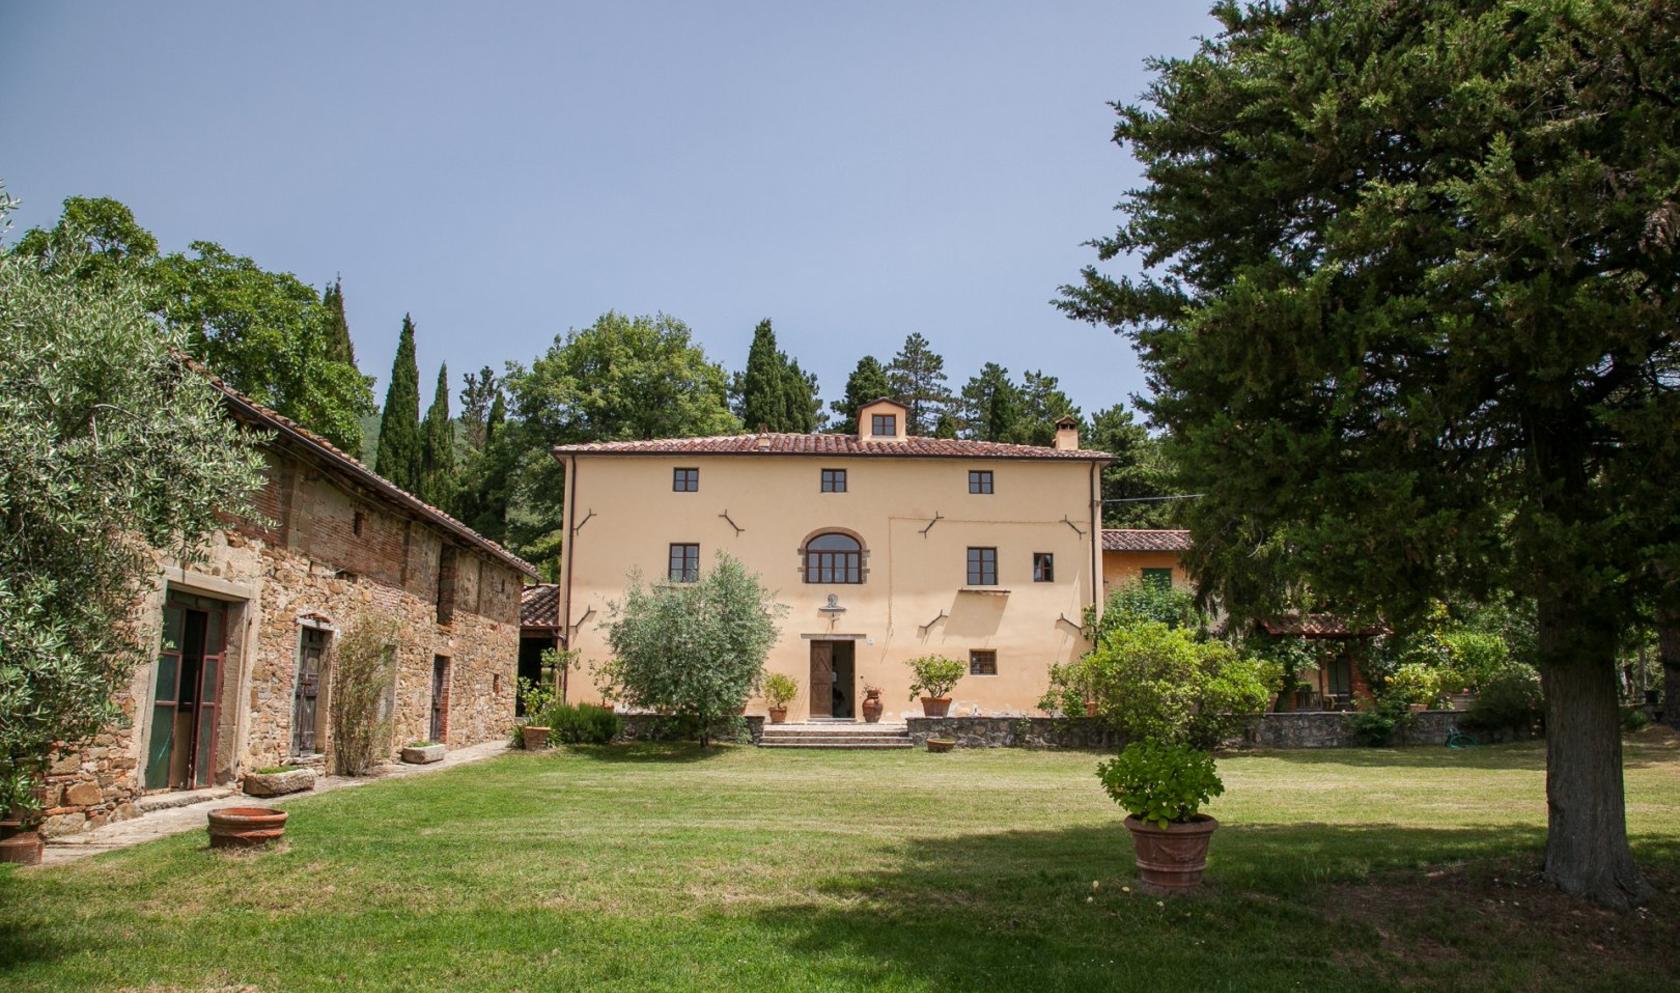 Toscana Immobiliare - main villa restored in Arezzo, Tuscany